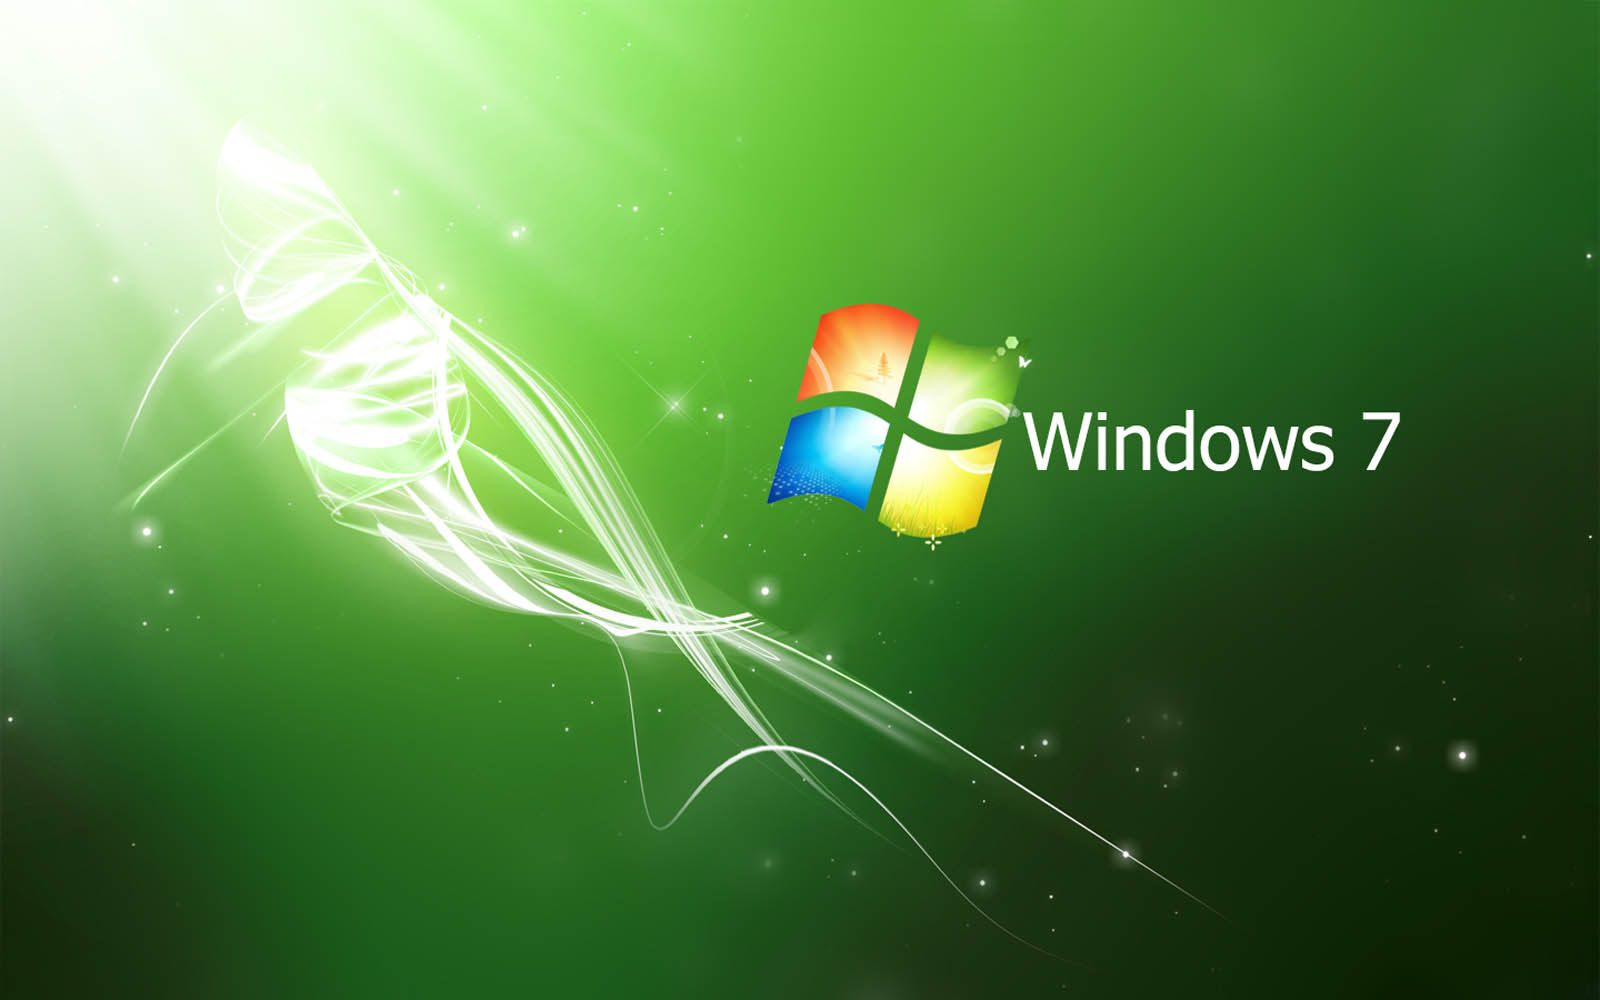 Bạn yêu thích màu xanh lá cây và muốn tùy chỉnh desktop của mình theo phong cách này? Không thể bỏ qua bộ sưu tập hình nền Windows 7 màu xanh lá tuyệt đẹp này!